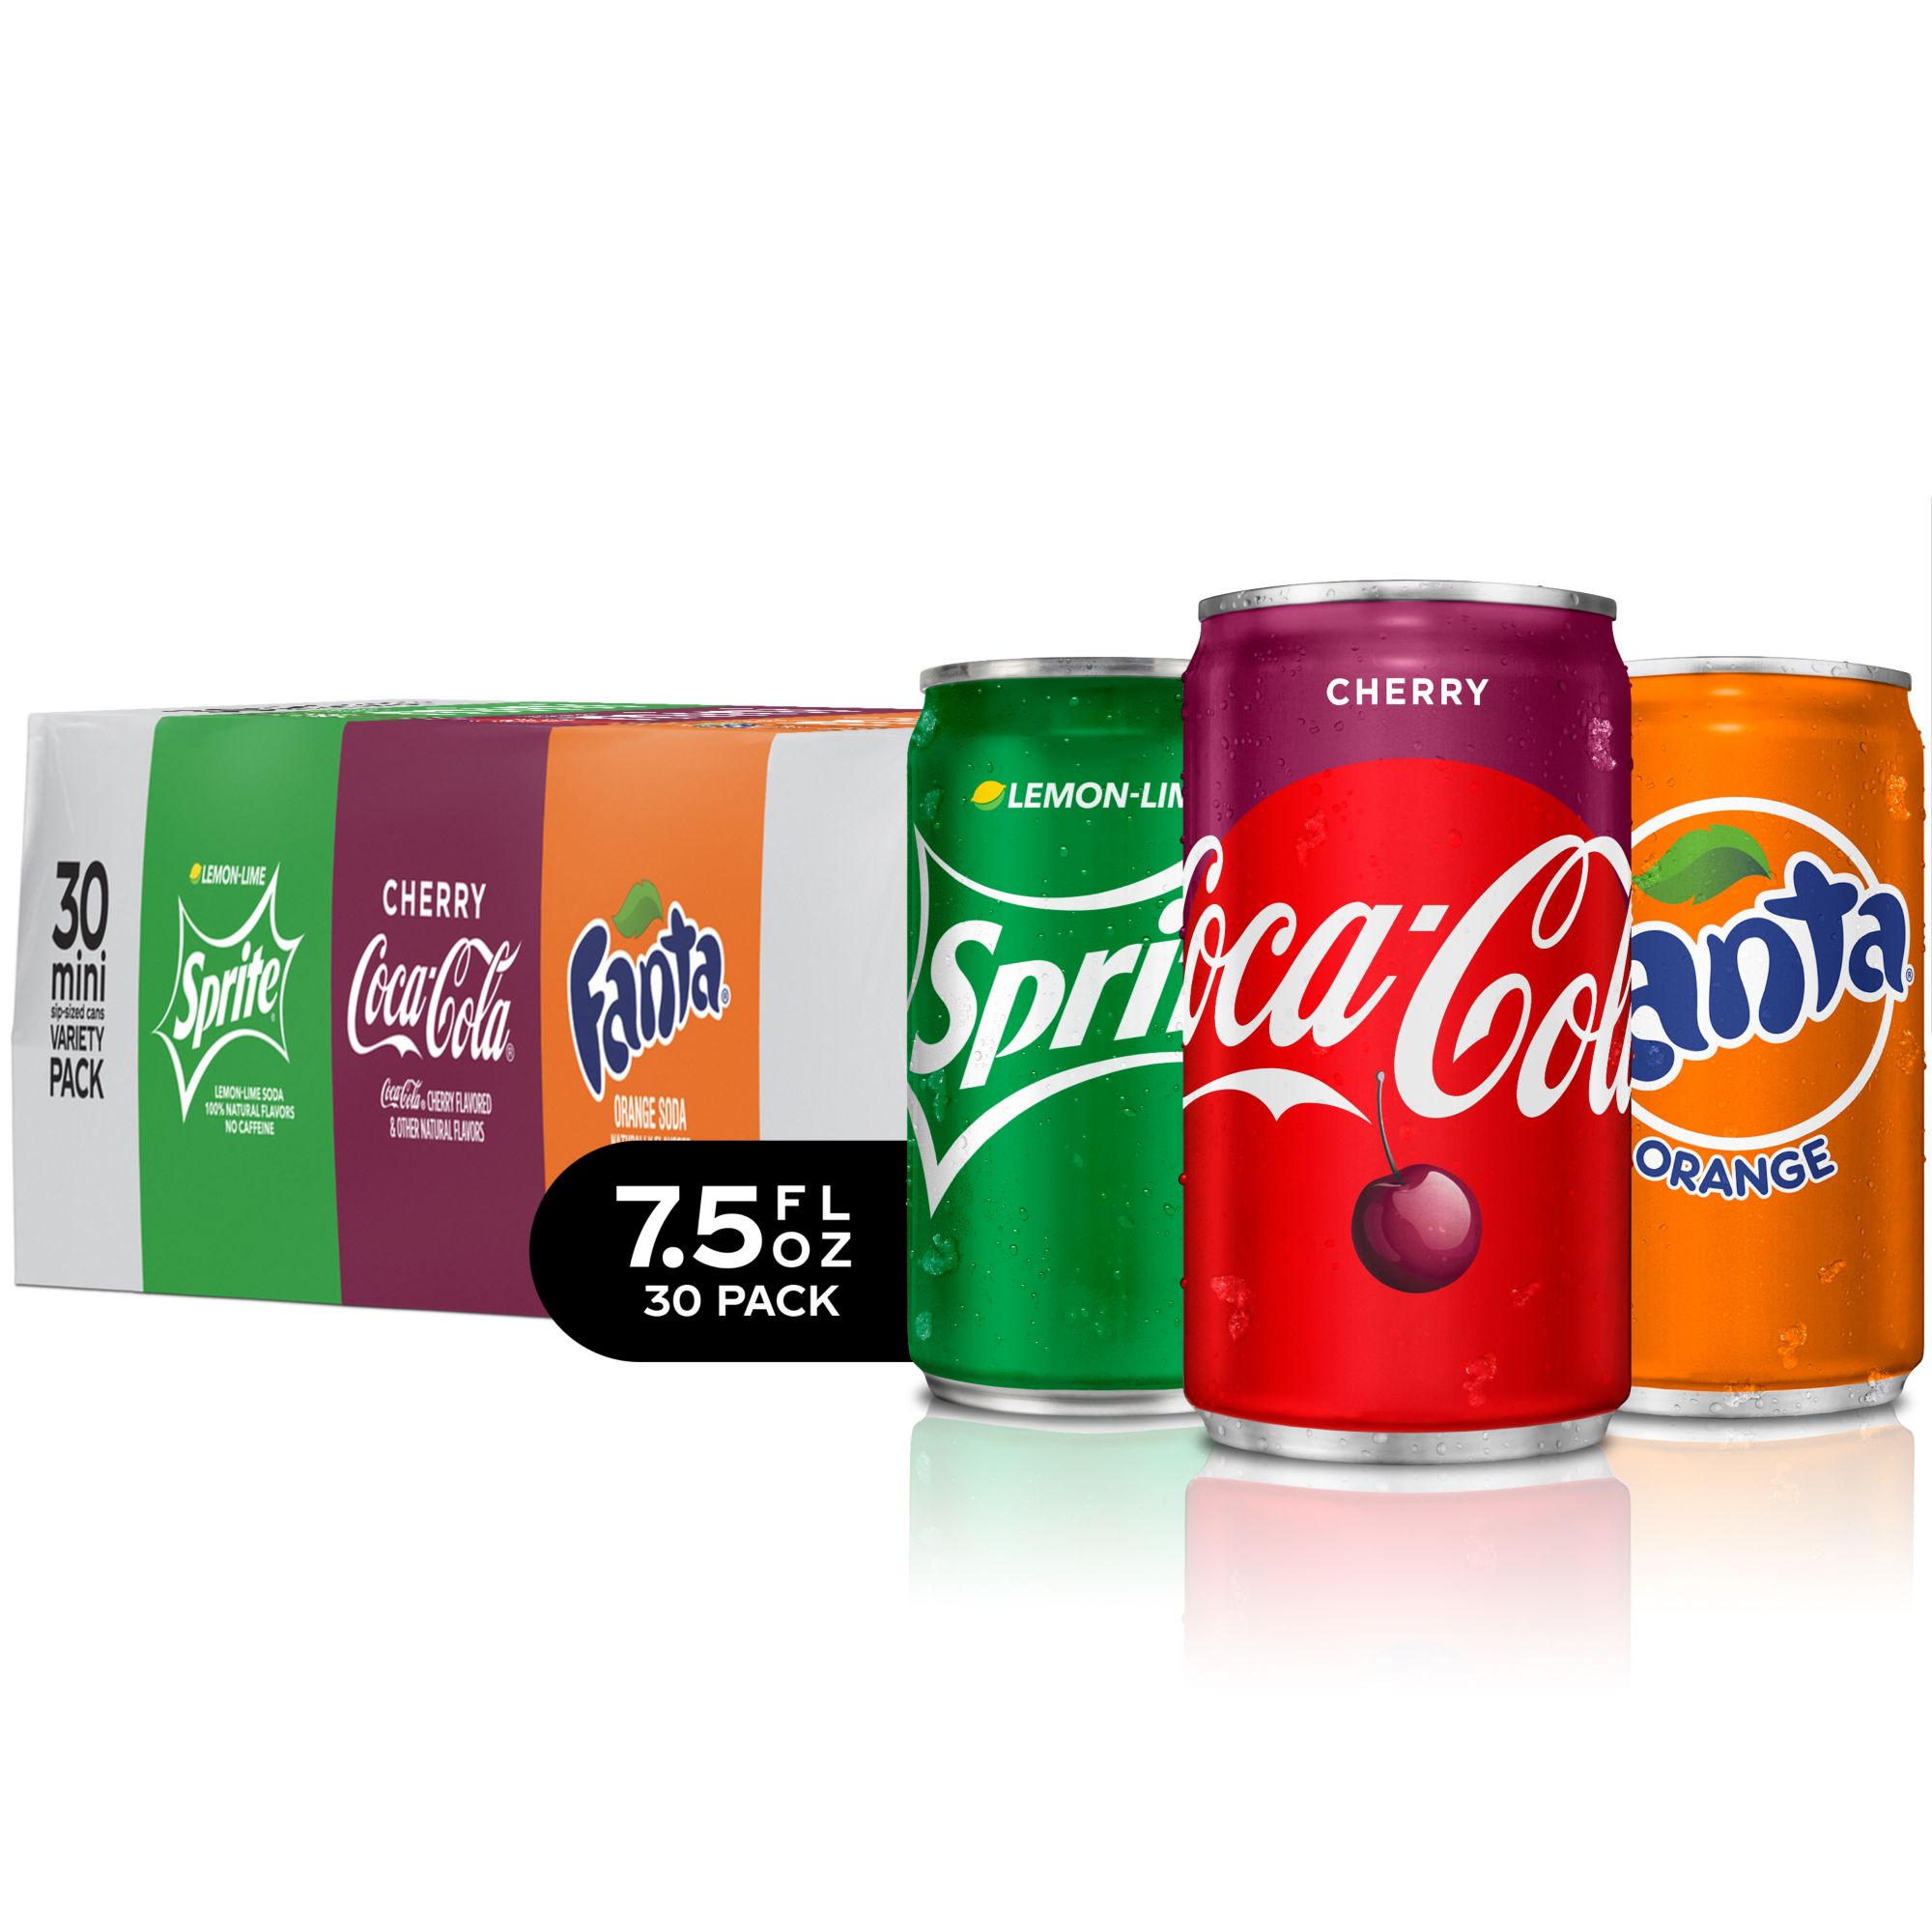 Save on Coca-Cola Zero Sugar Cola Soda Mini - 10 pk Order Online Delivery